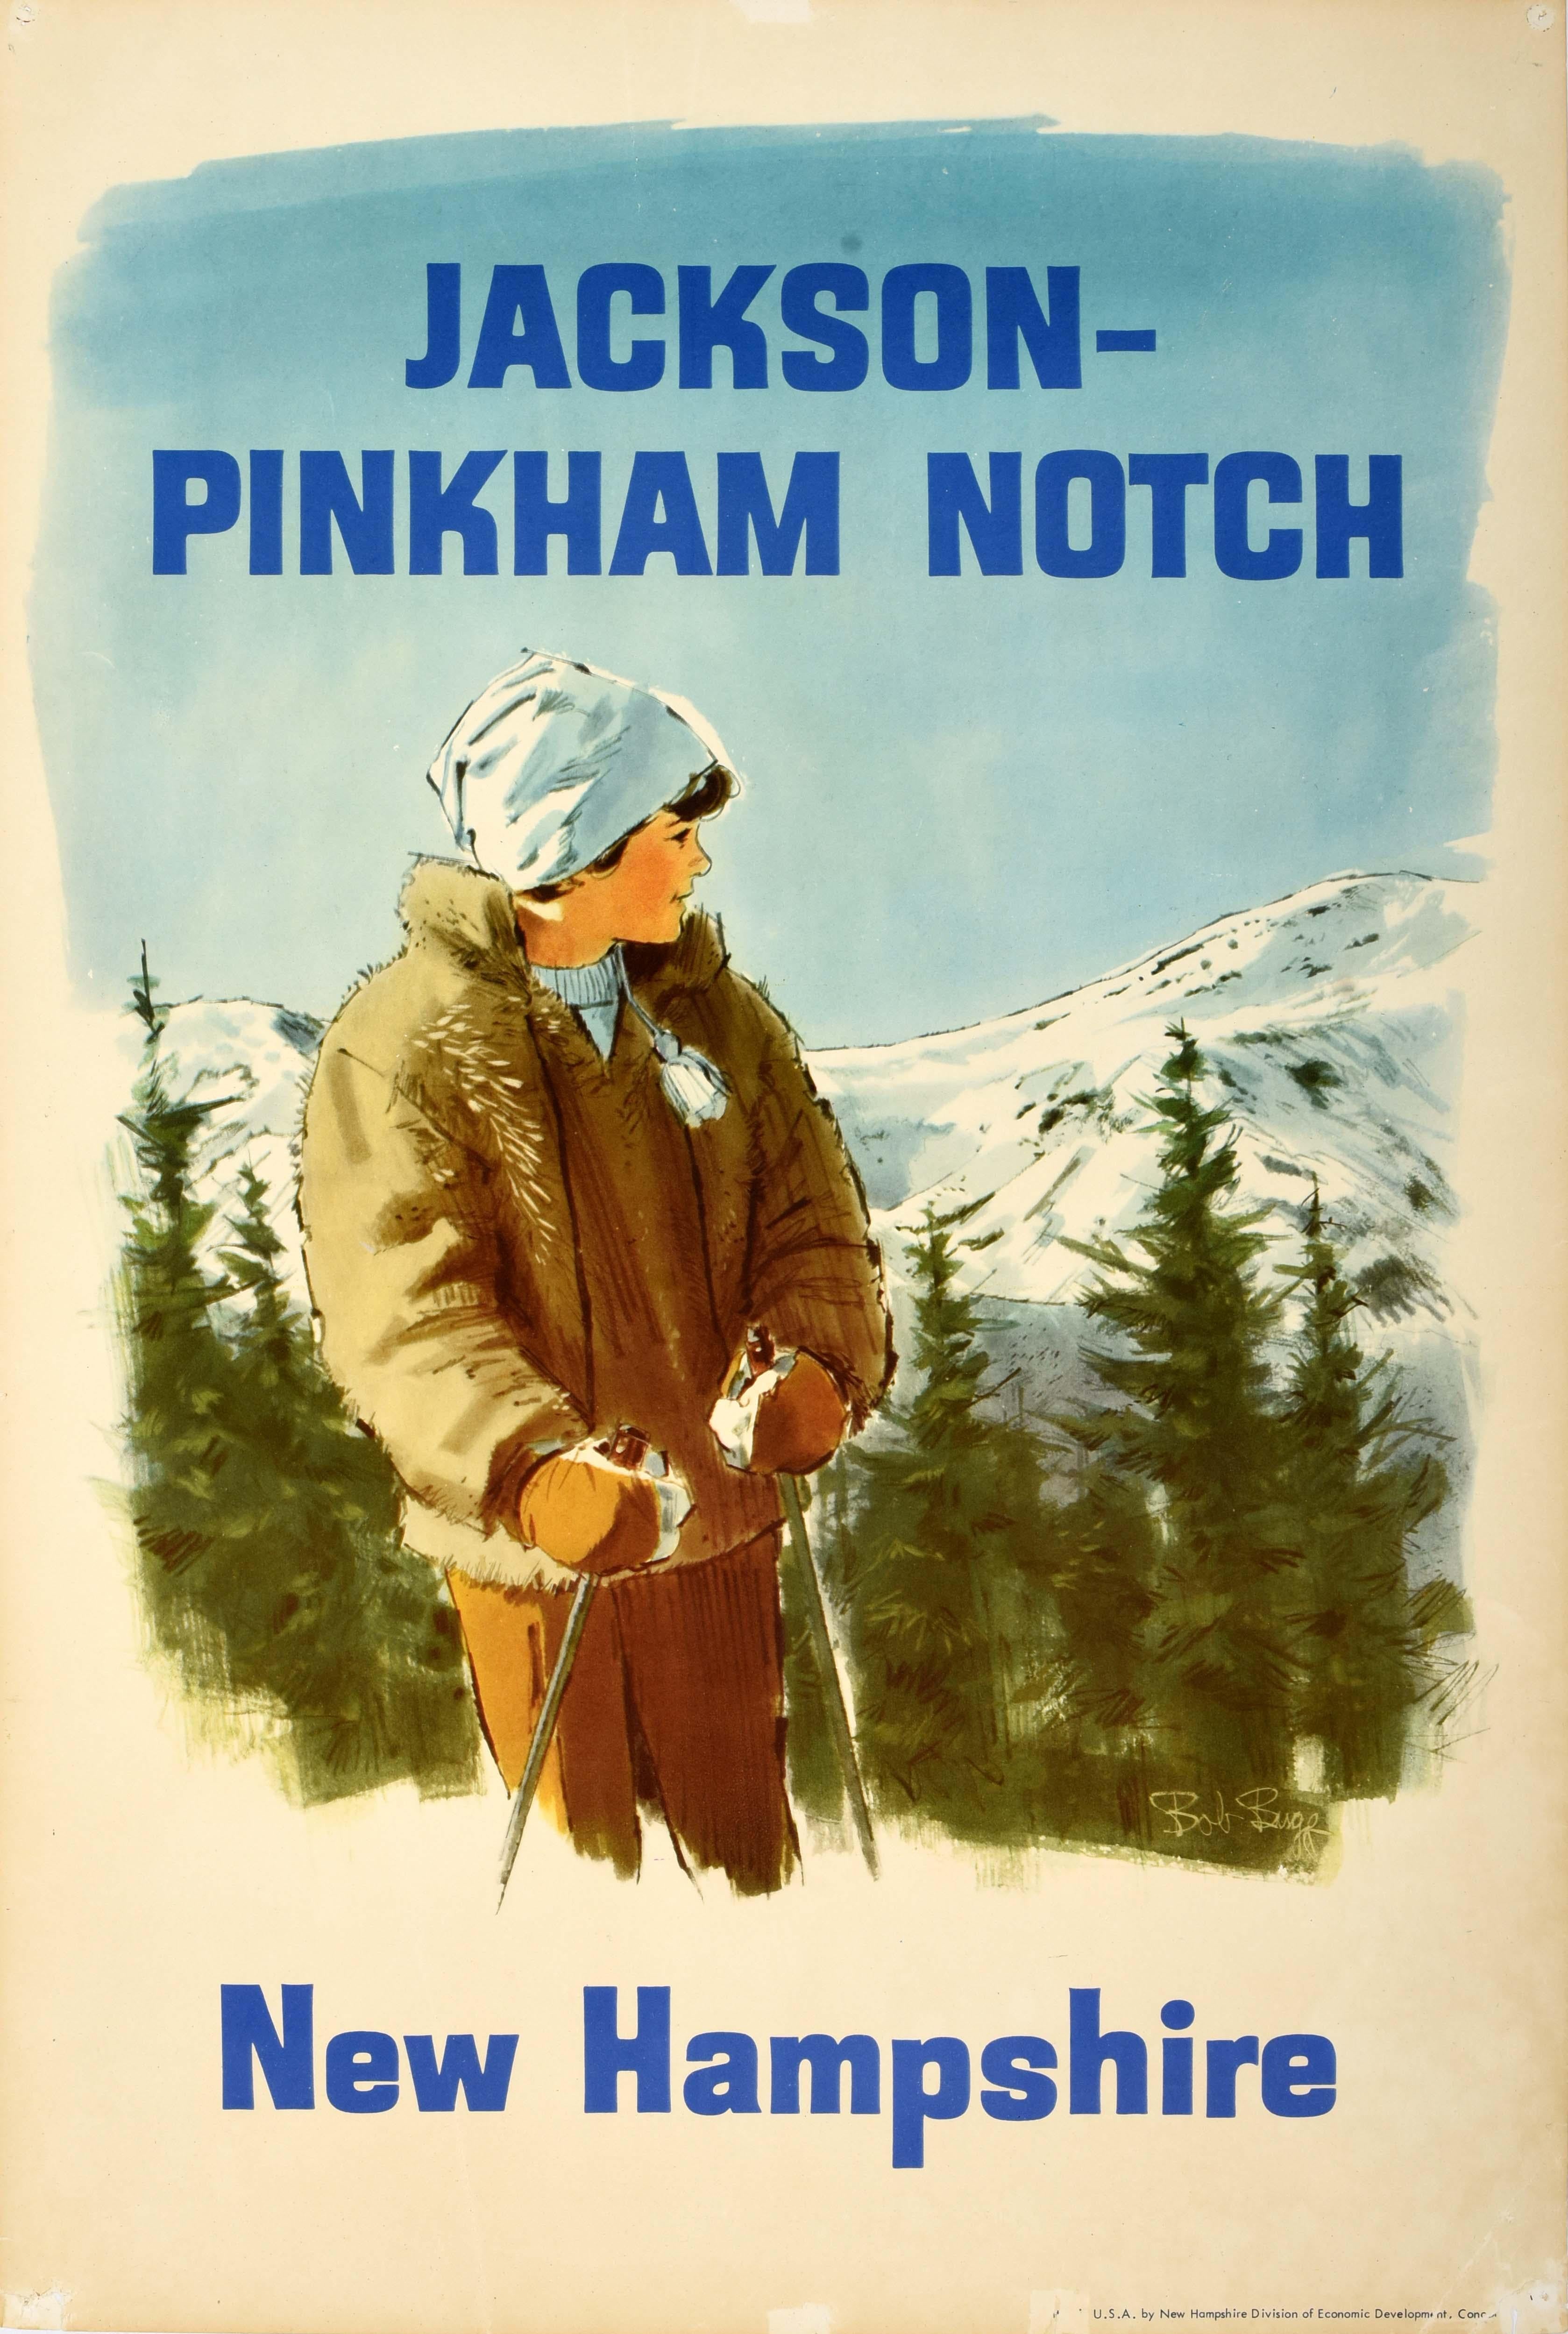 Print Unknown - Affiche de voyage vintage originale de Jackson Pinkham Notch dans le New Hampshire